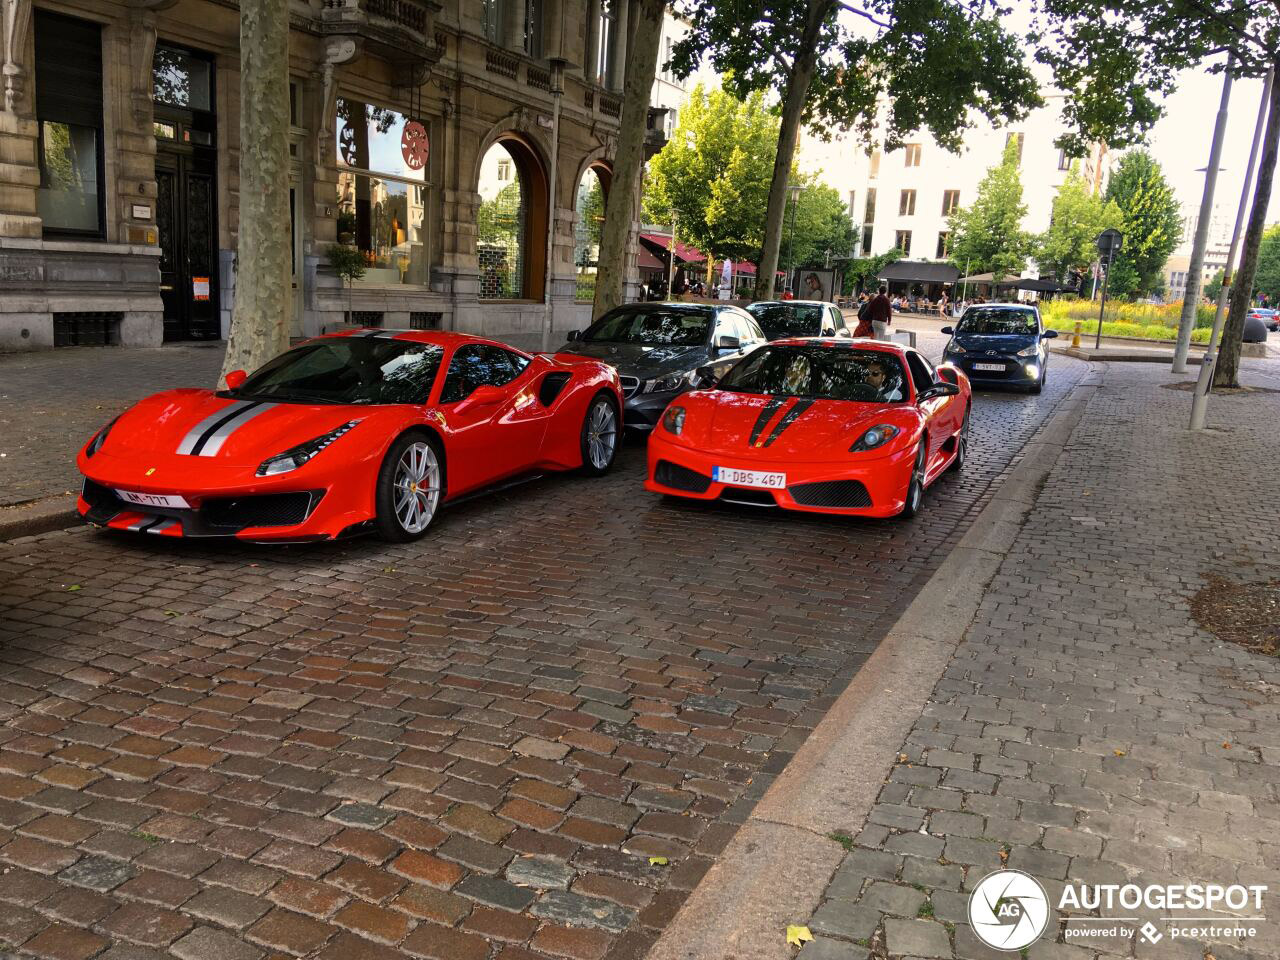 Twee generaties Ferrari ontmoeten elkaar op straat